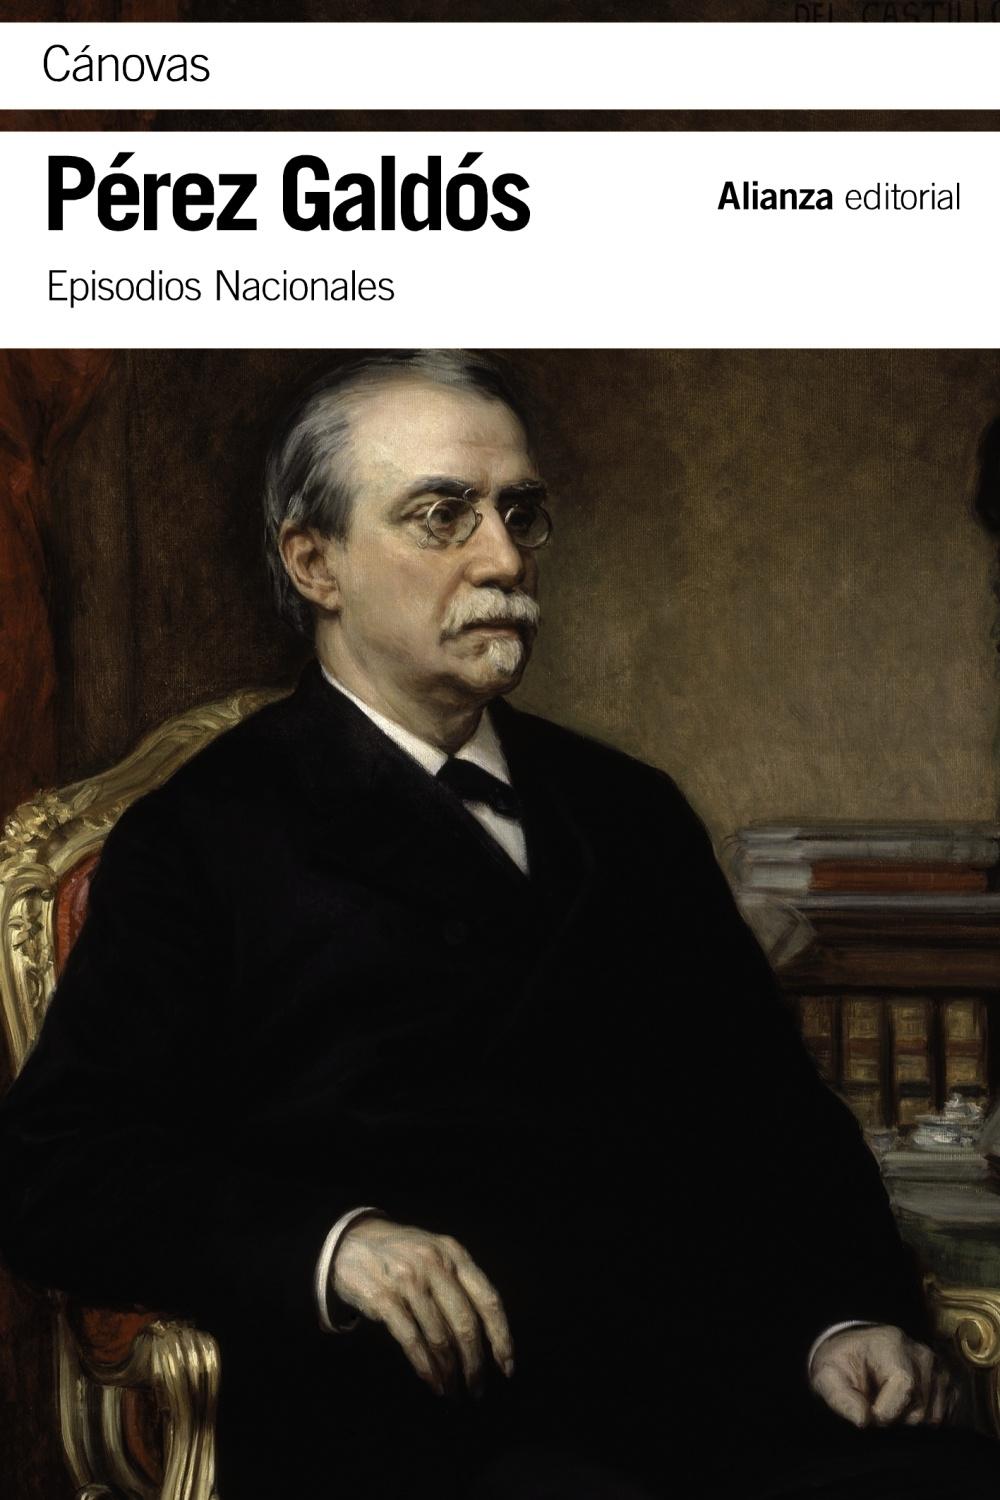 Cánovas "Episodios Nacionales 46 / Serie final". 